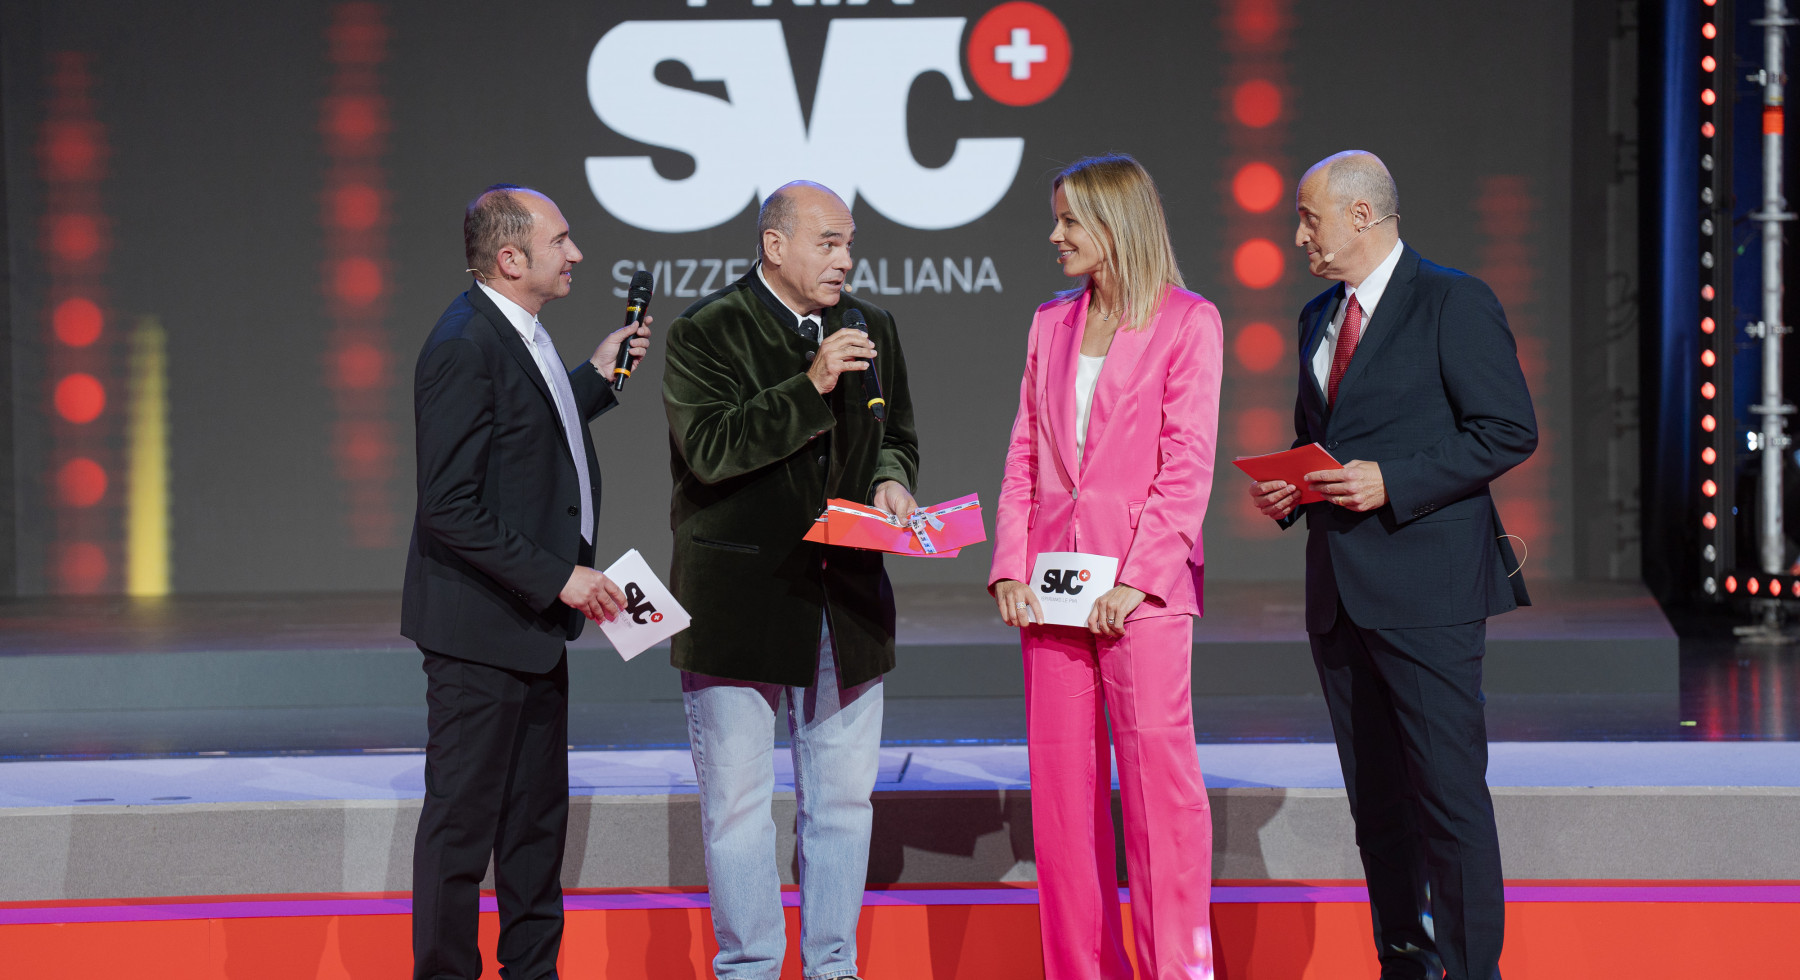 Prix SVC Svizzera italiana 2024